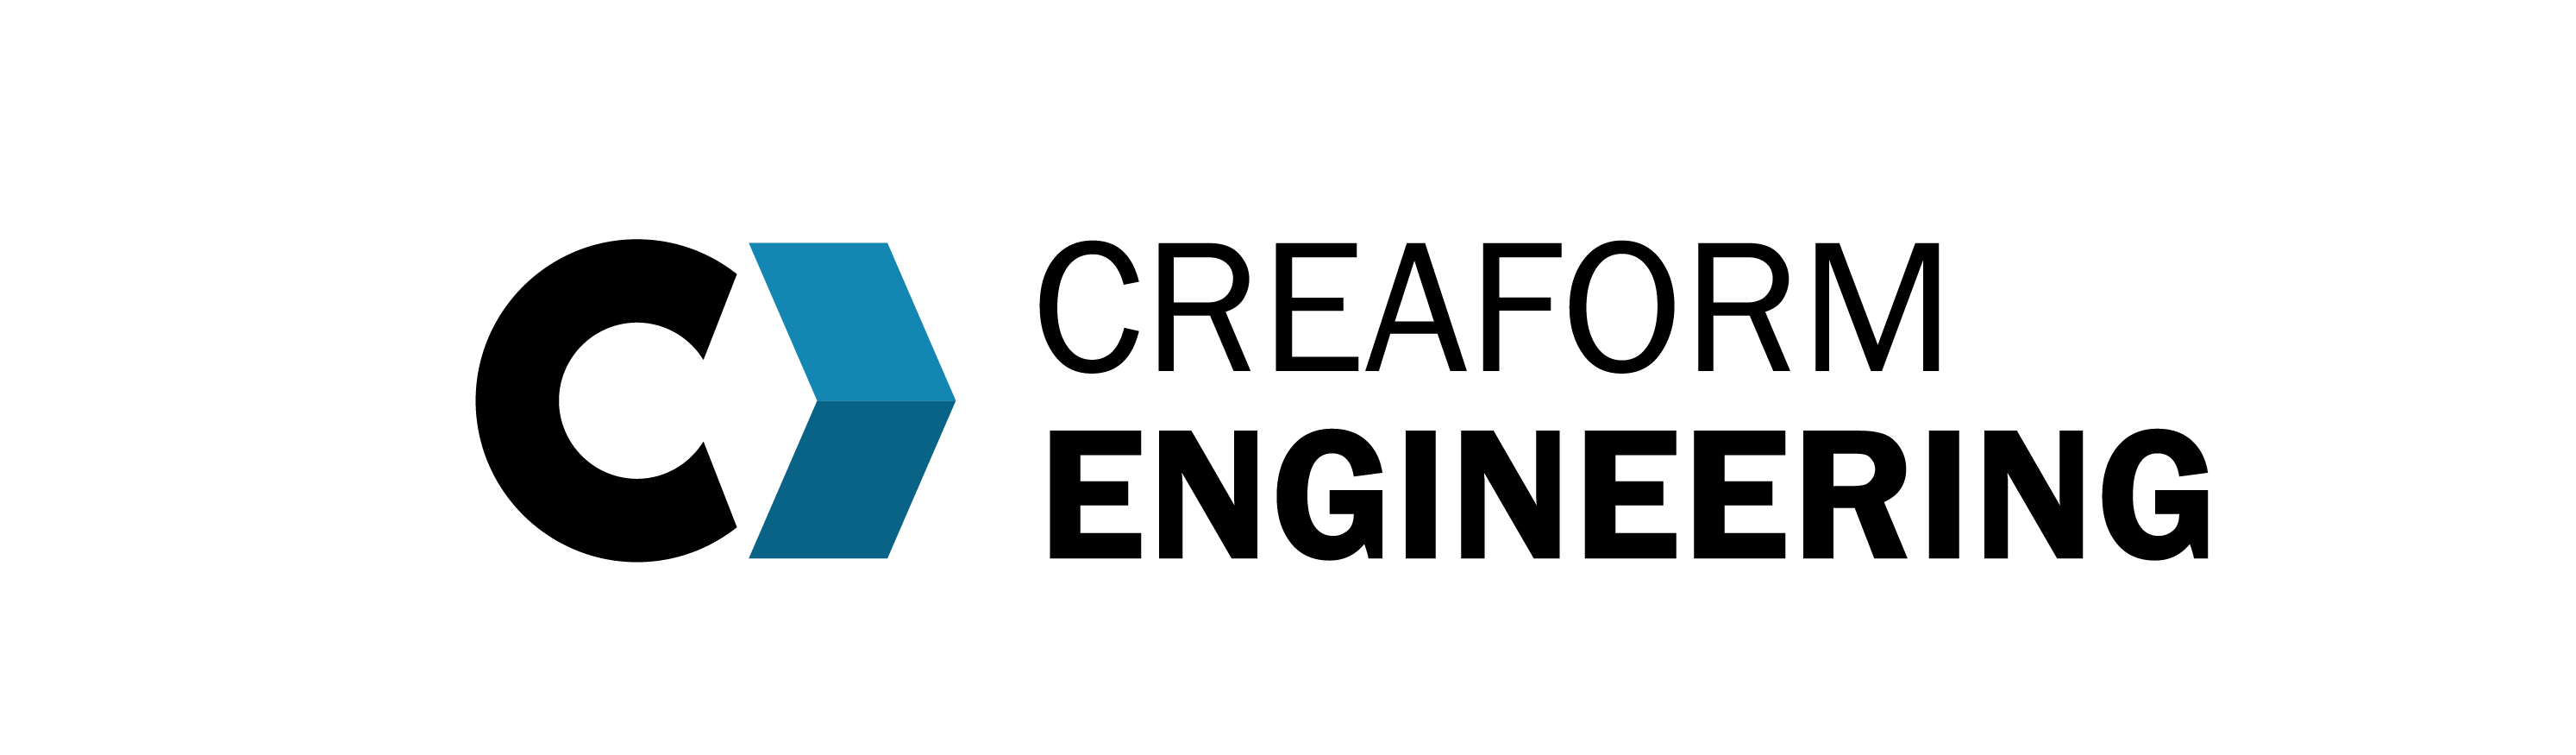 Creaform Engineering Services